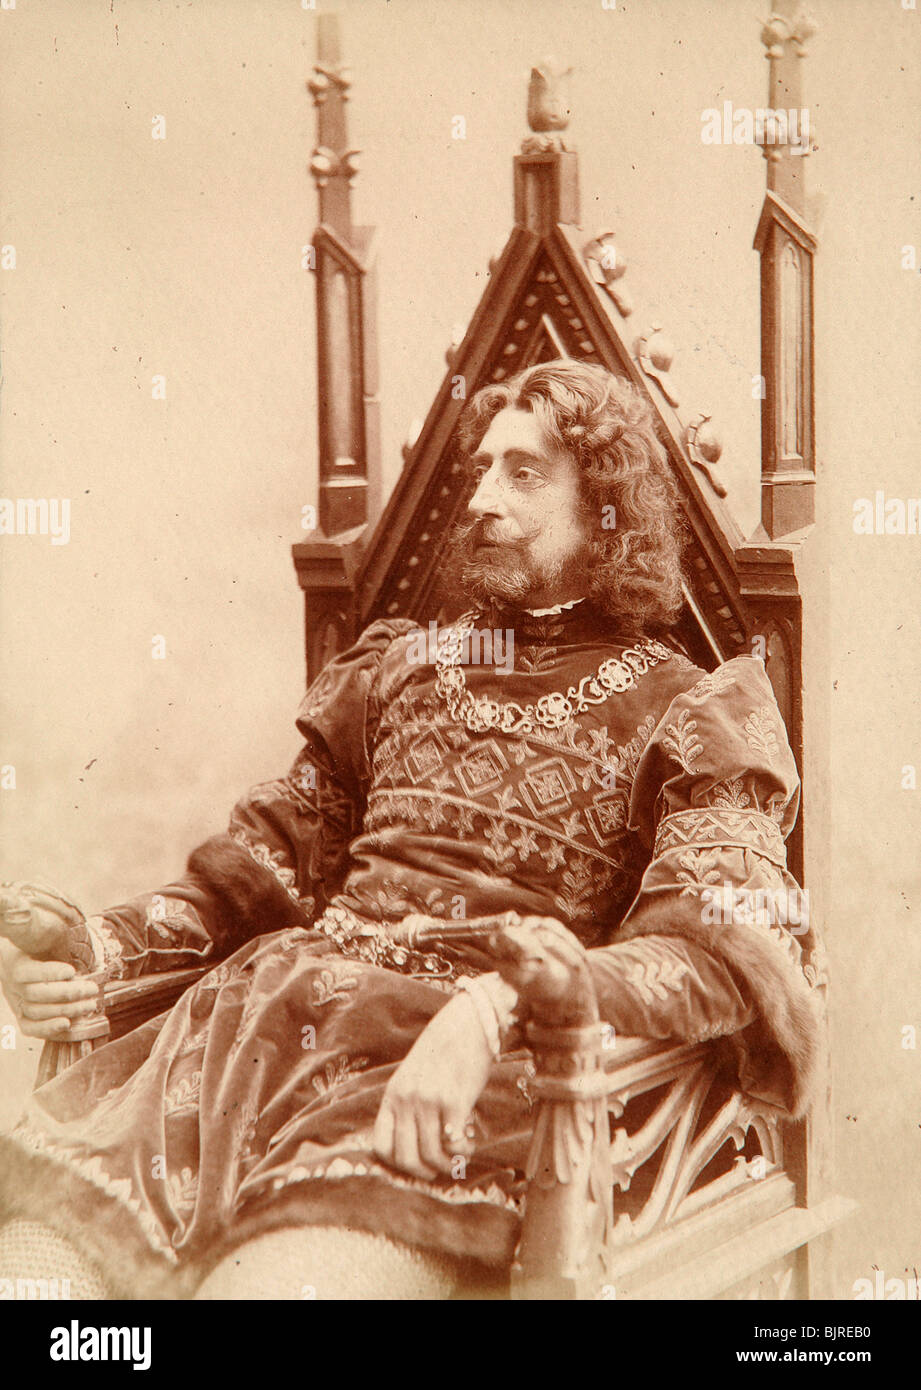 Il Granduca Costantino Constantinovich della Russia come frazione, 1900. Artista: Karl August Fischer Foto Stock